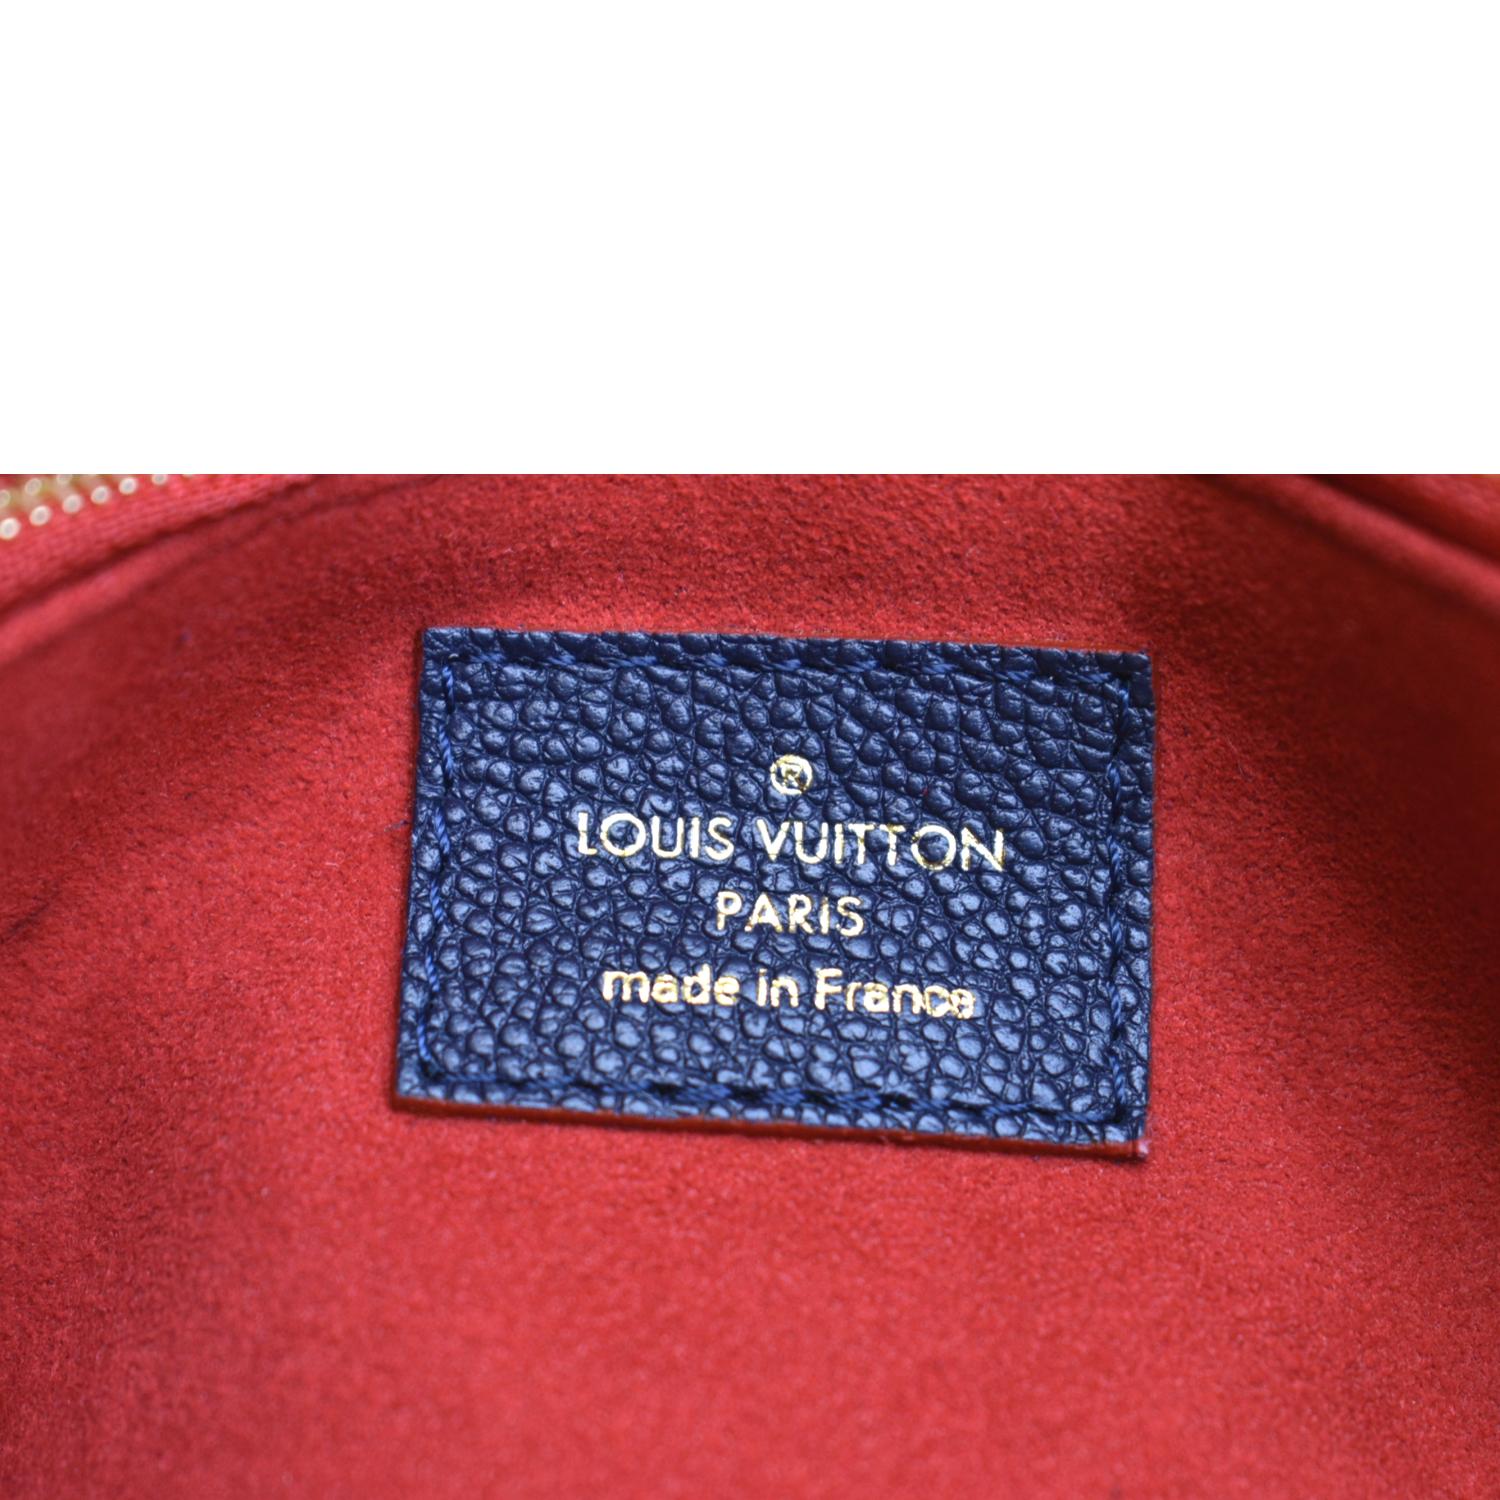 URGENT SALE!!! Authentic LV Vavin PM Monogram, Luxury, Bags